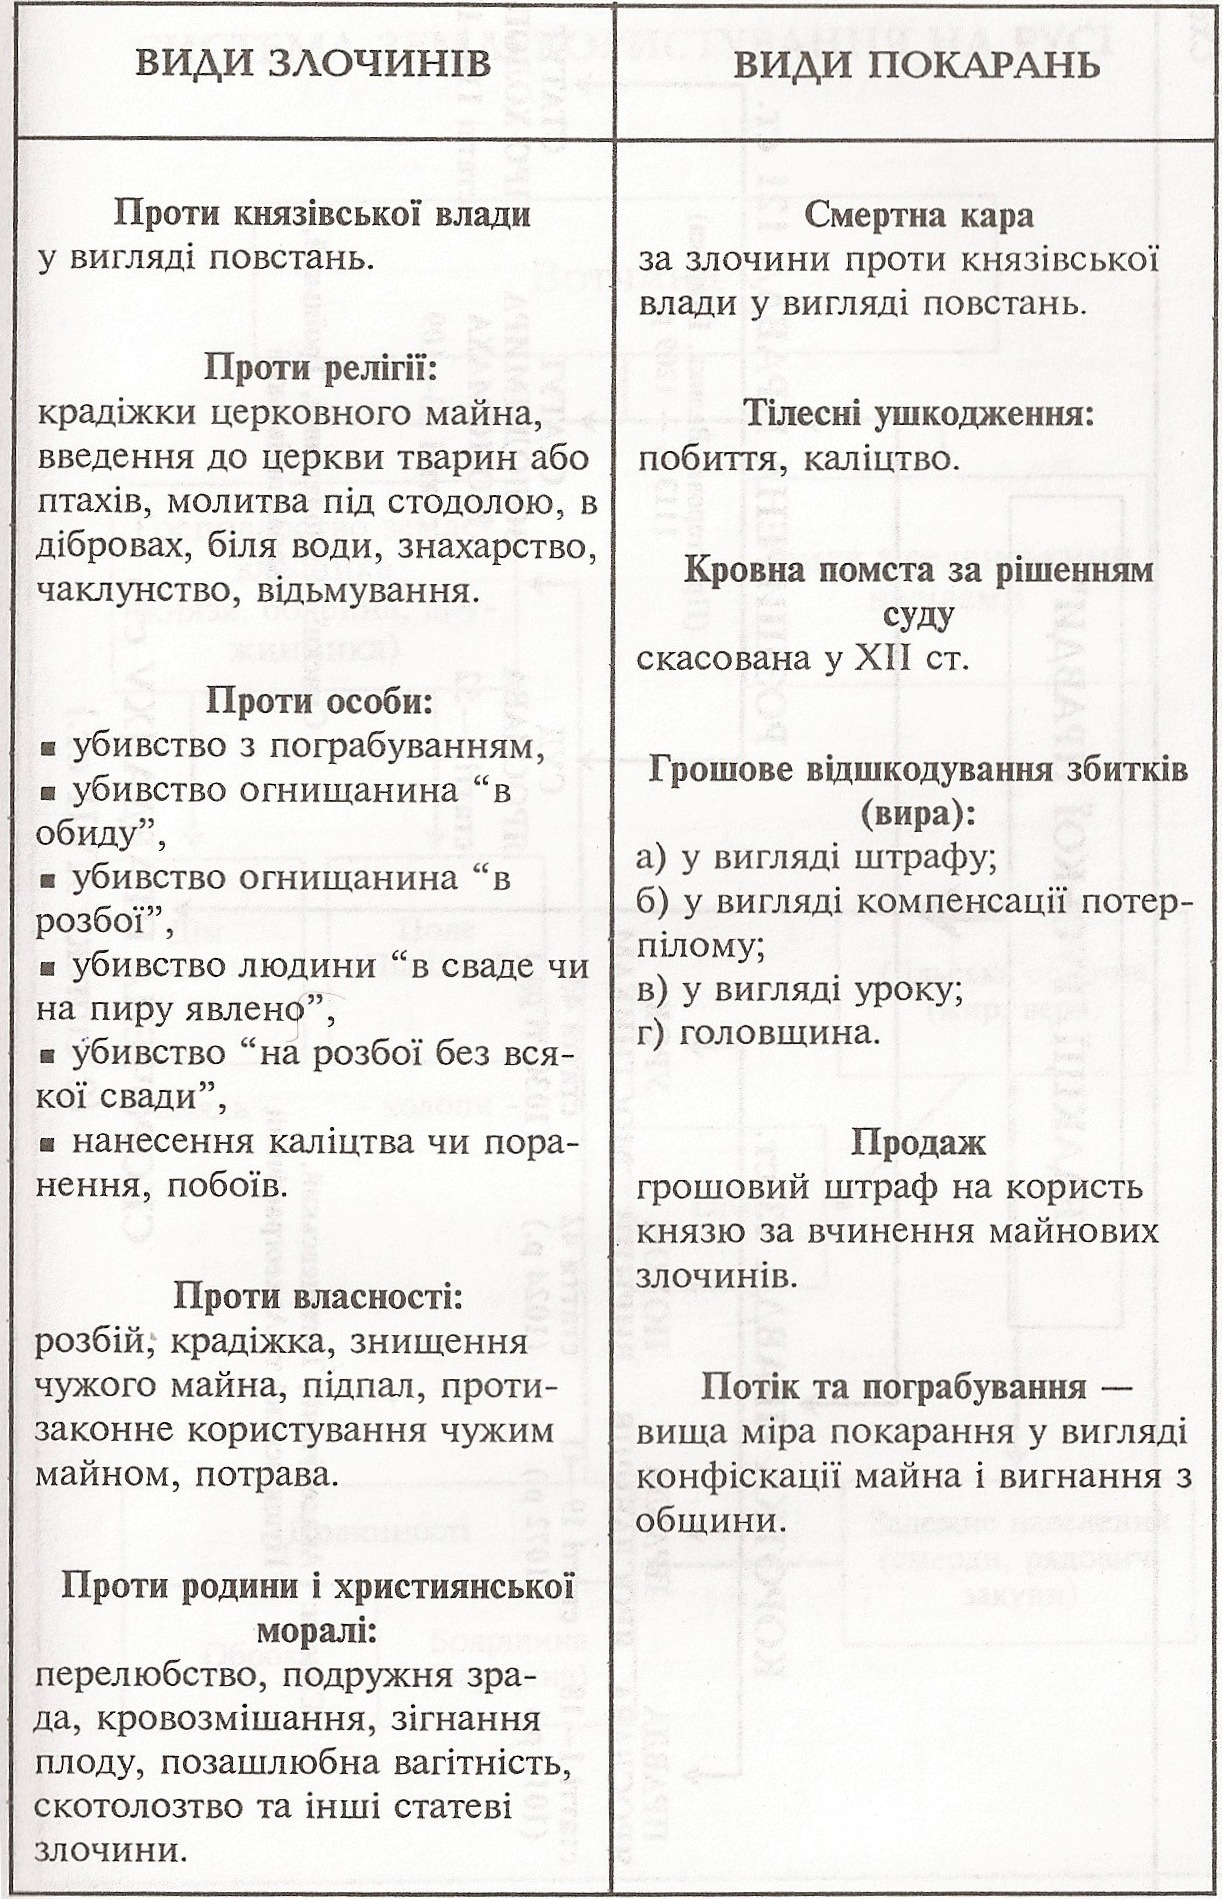 Таблиця: Види злочинів та покарань в Київській Русі 